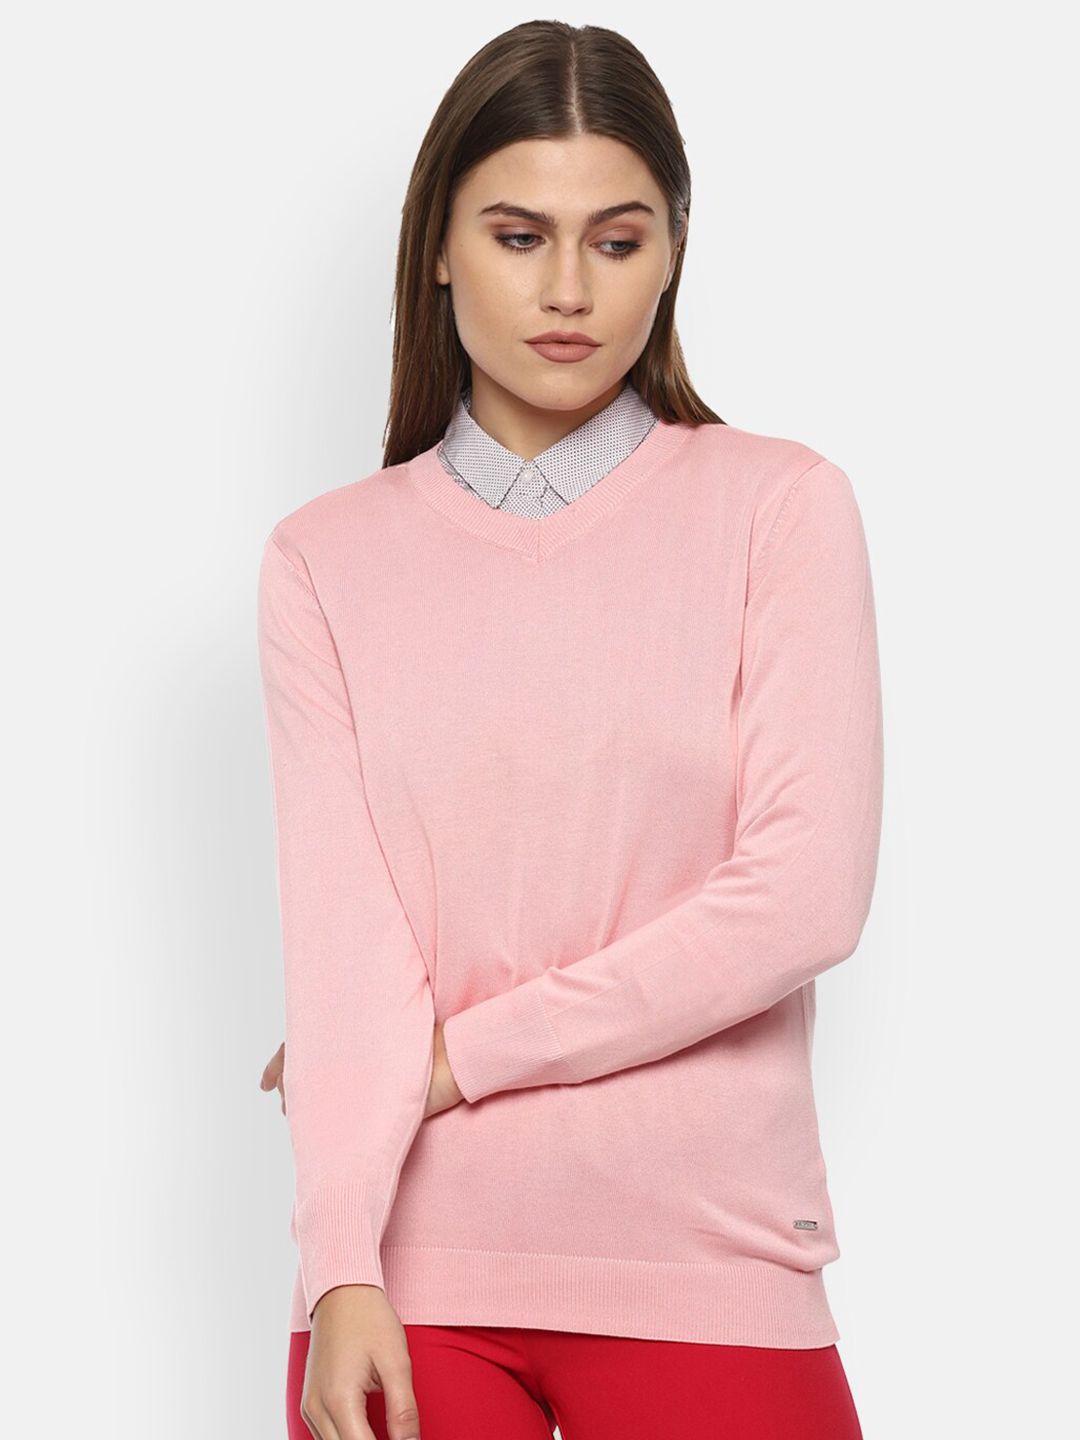 Van Heusen Woman  Pink Pullover Price in India